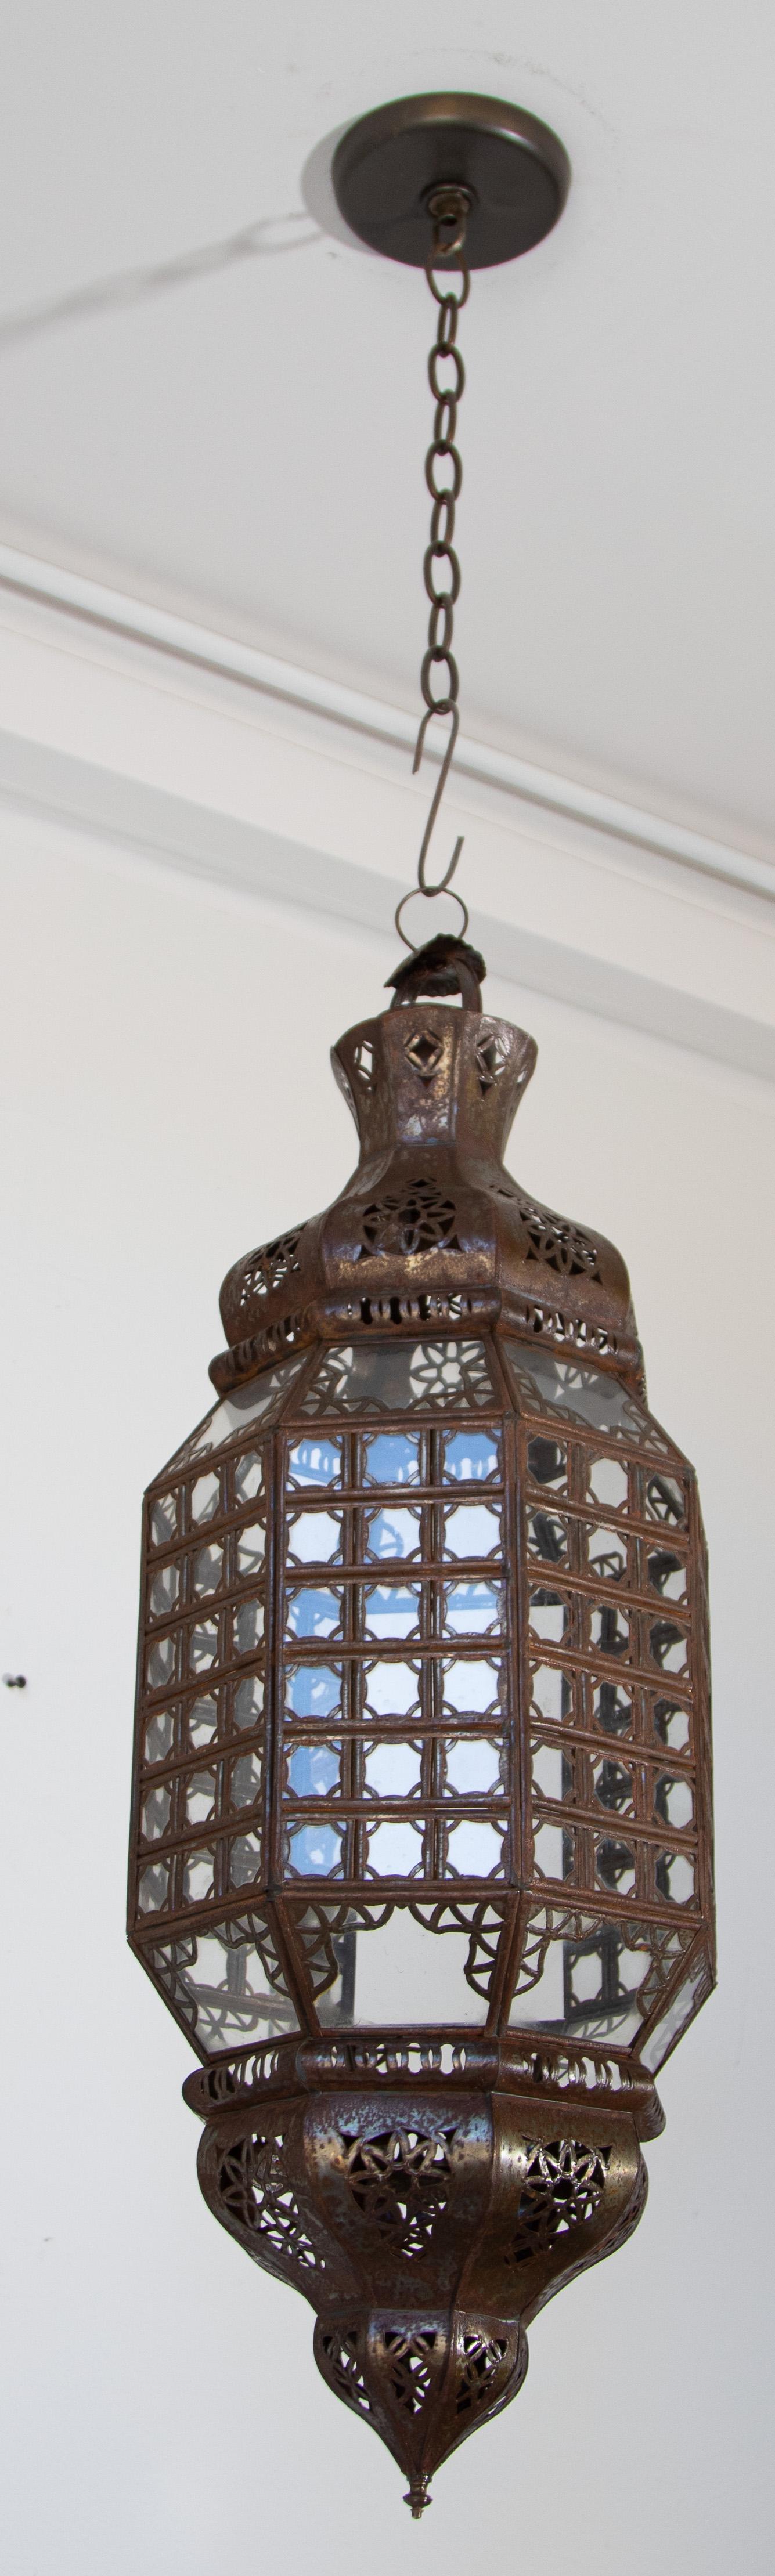 Lanterne marocaine élégante fabriquée à la main avec un verre transparent et un design de mosaïque mauresque en filigrane métallique.
Finition bronze antique.
Pendentif en verre de style mauresque composé d'une douzaine de petits verres taillés et